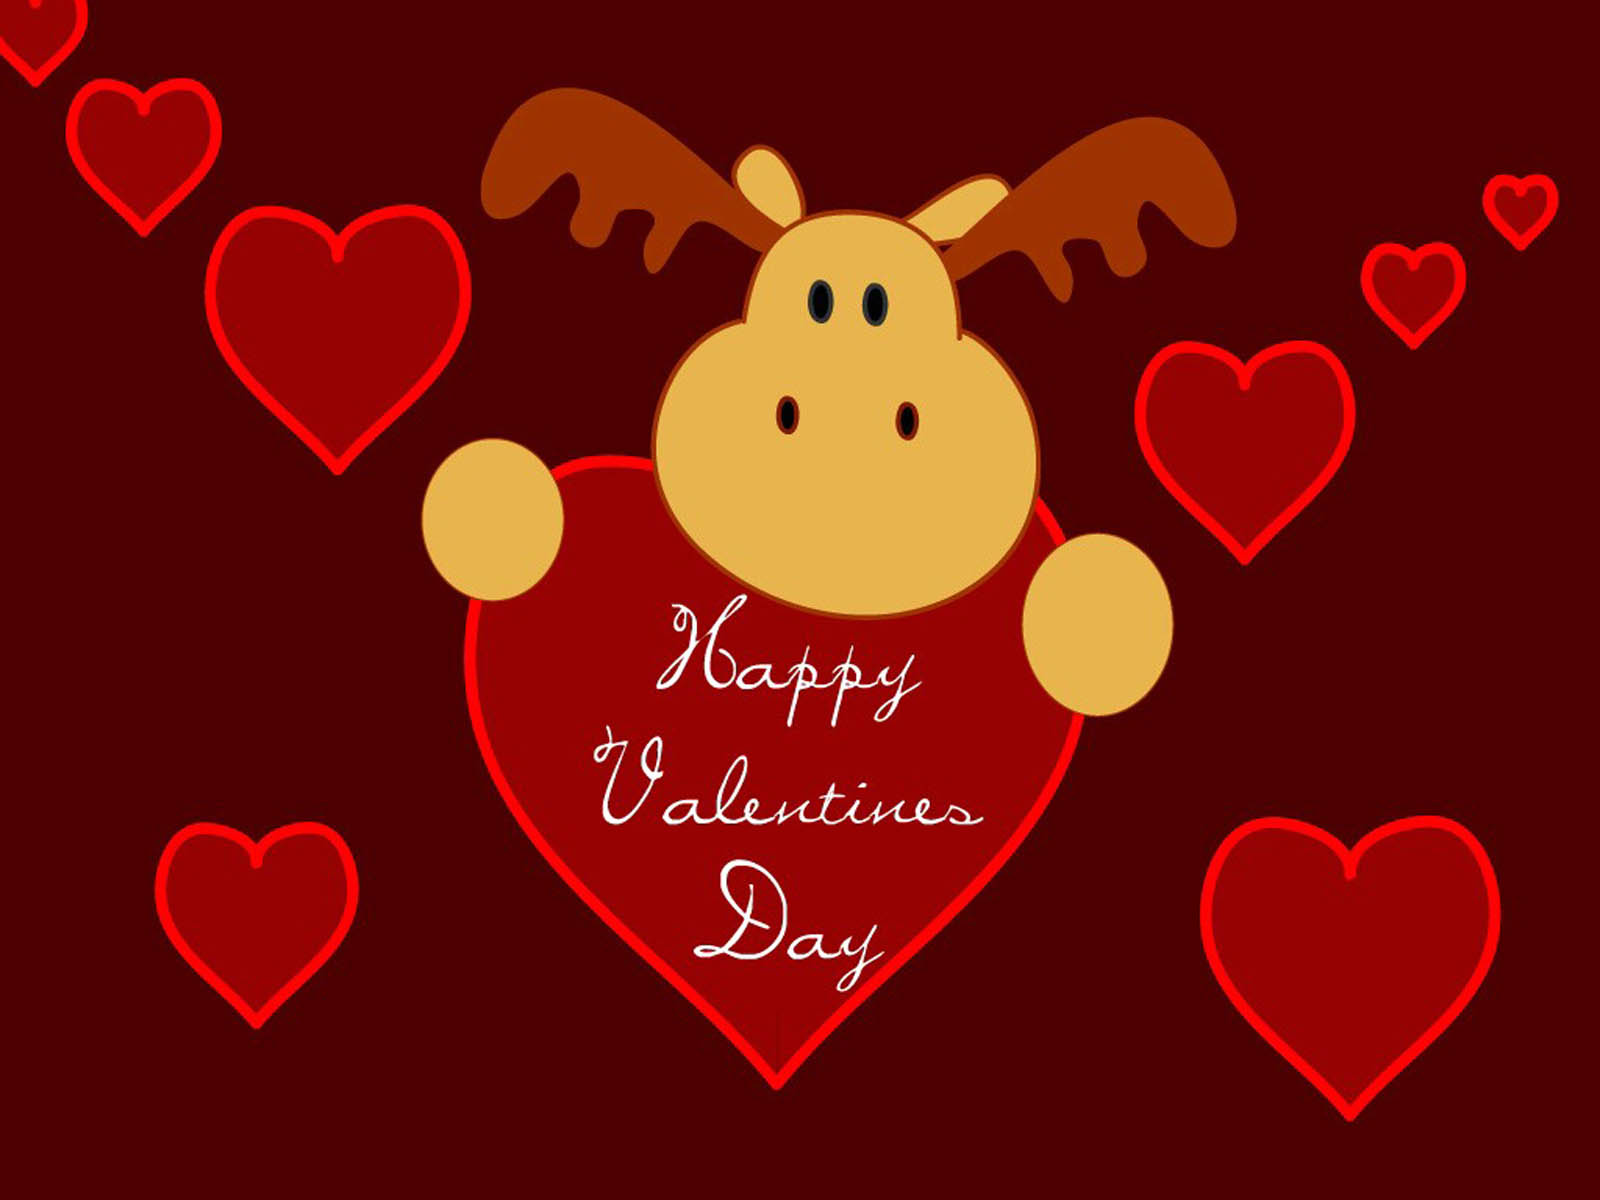 valentines day desktop wallpaper,heart,red,valentine's day,love,heart